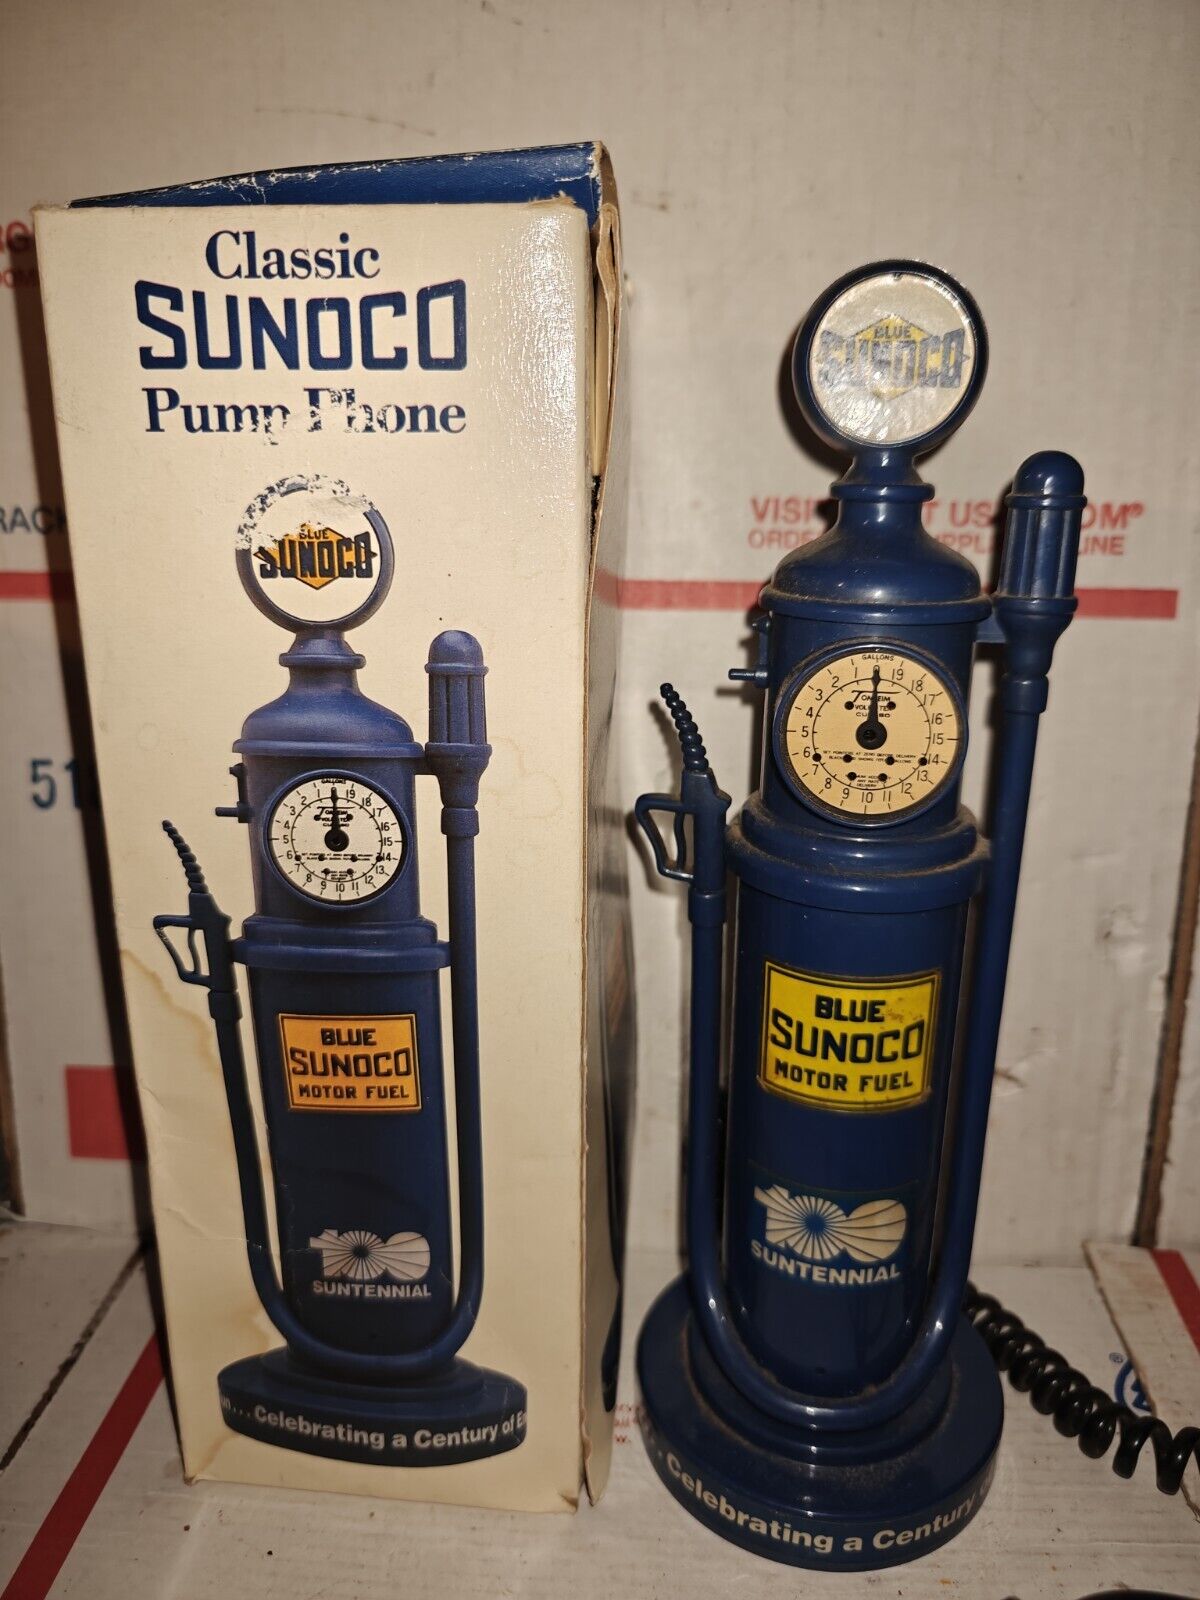 RARE Hard To Find Classic Blue SUNOCO Pump Phone In Original Box